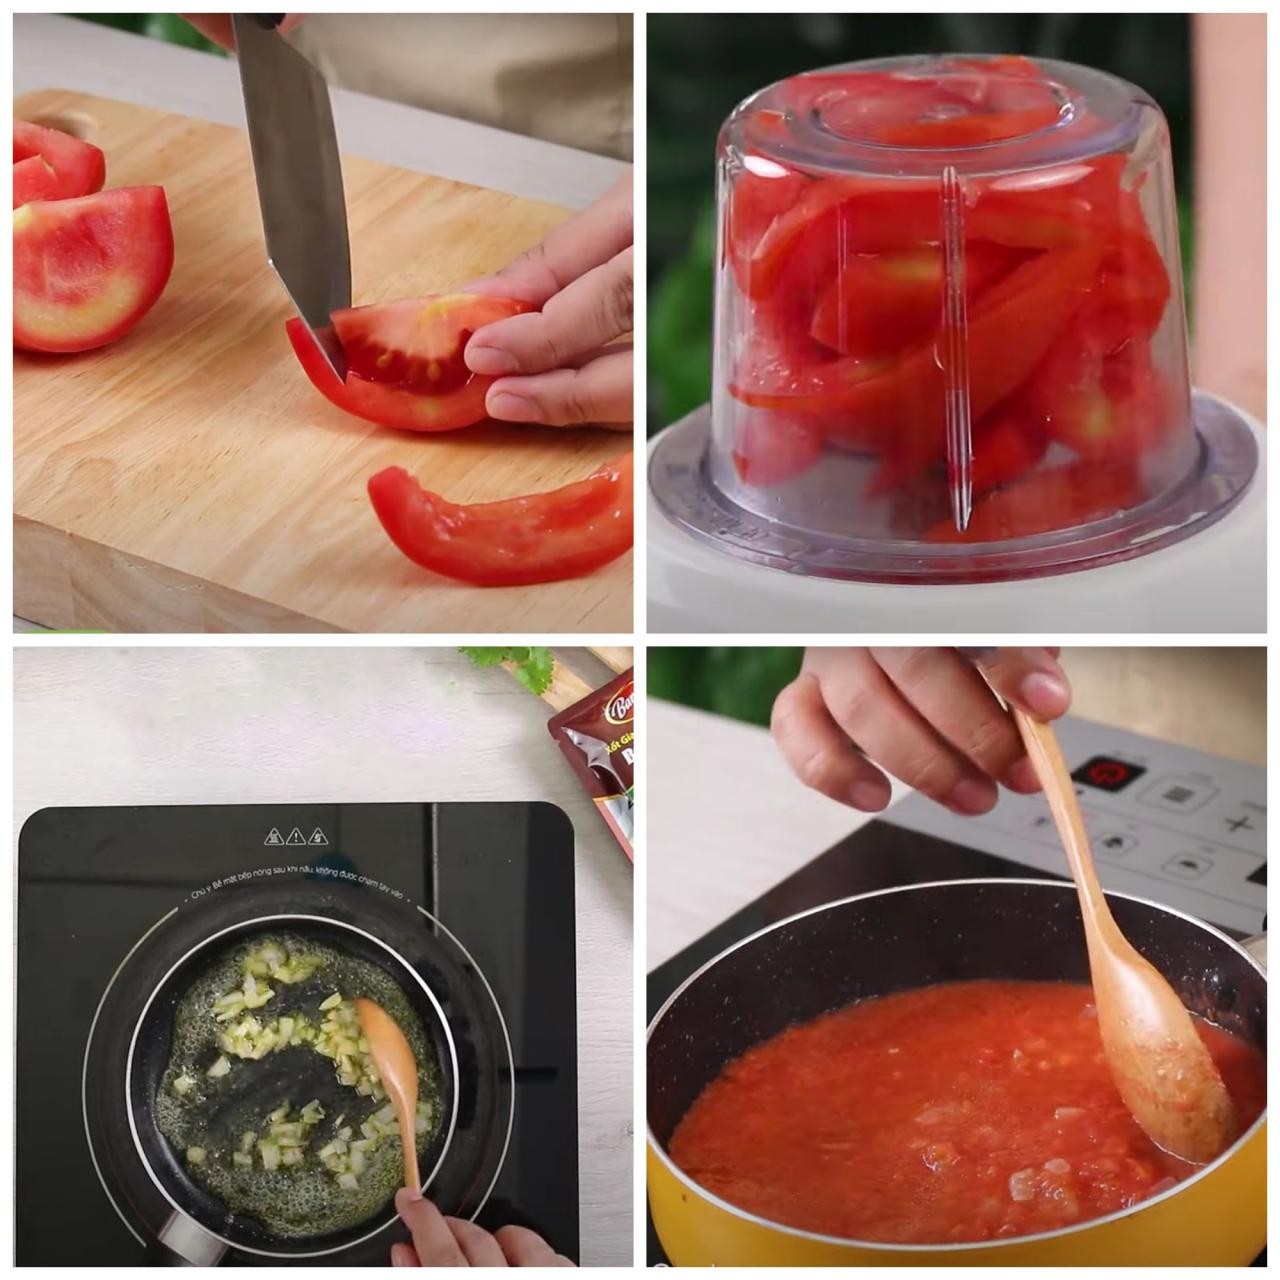 rửa sạch cà chua, cắt lát nhỏ bỏ vào máy xay nhuyễn, bắc bếp và đun lên